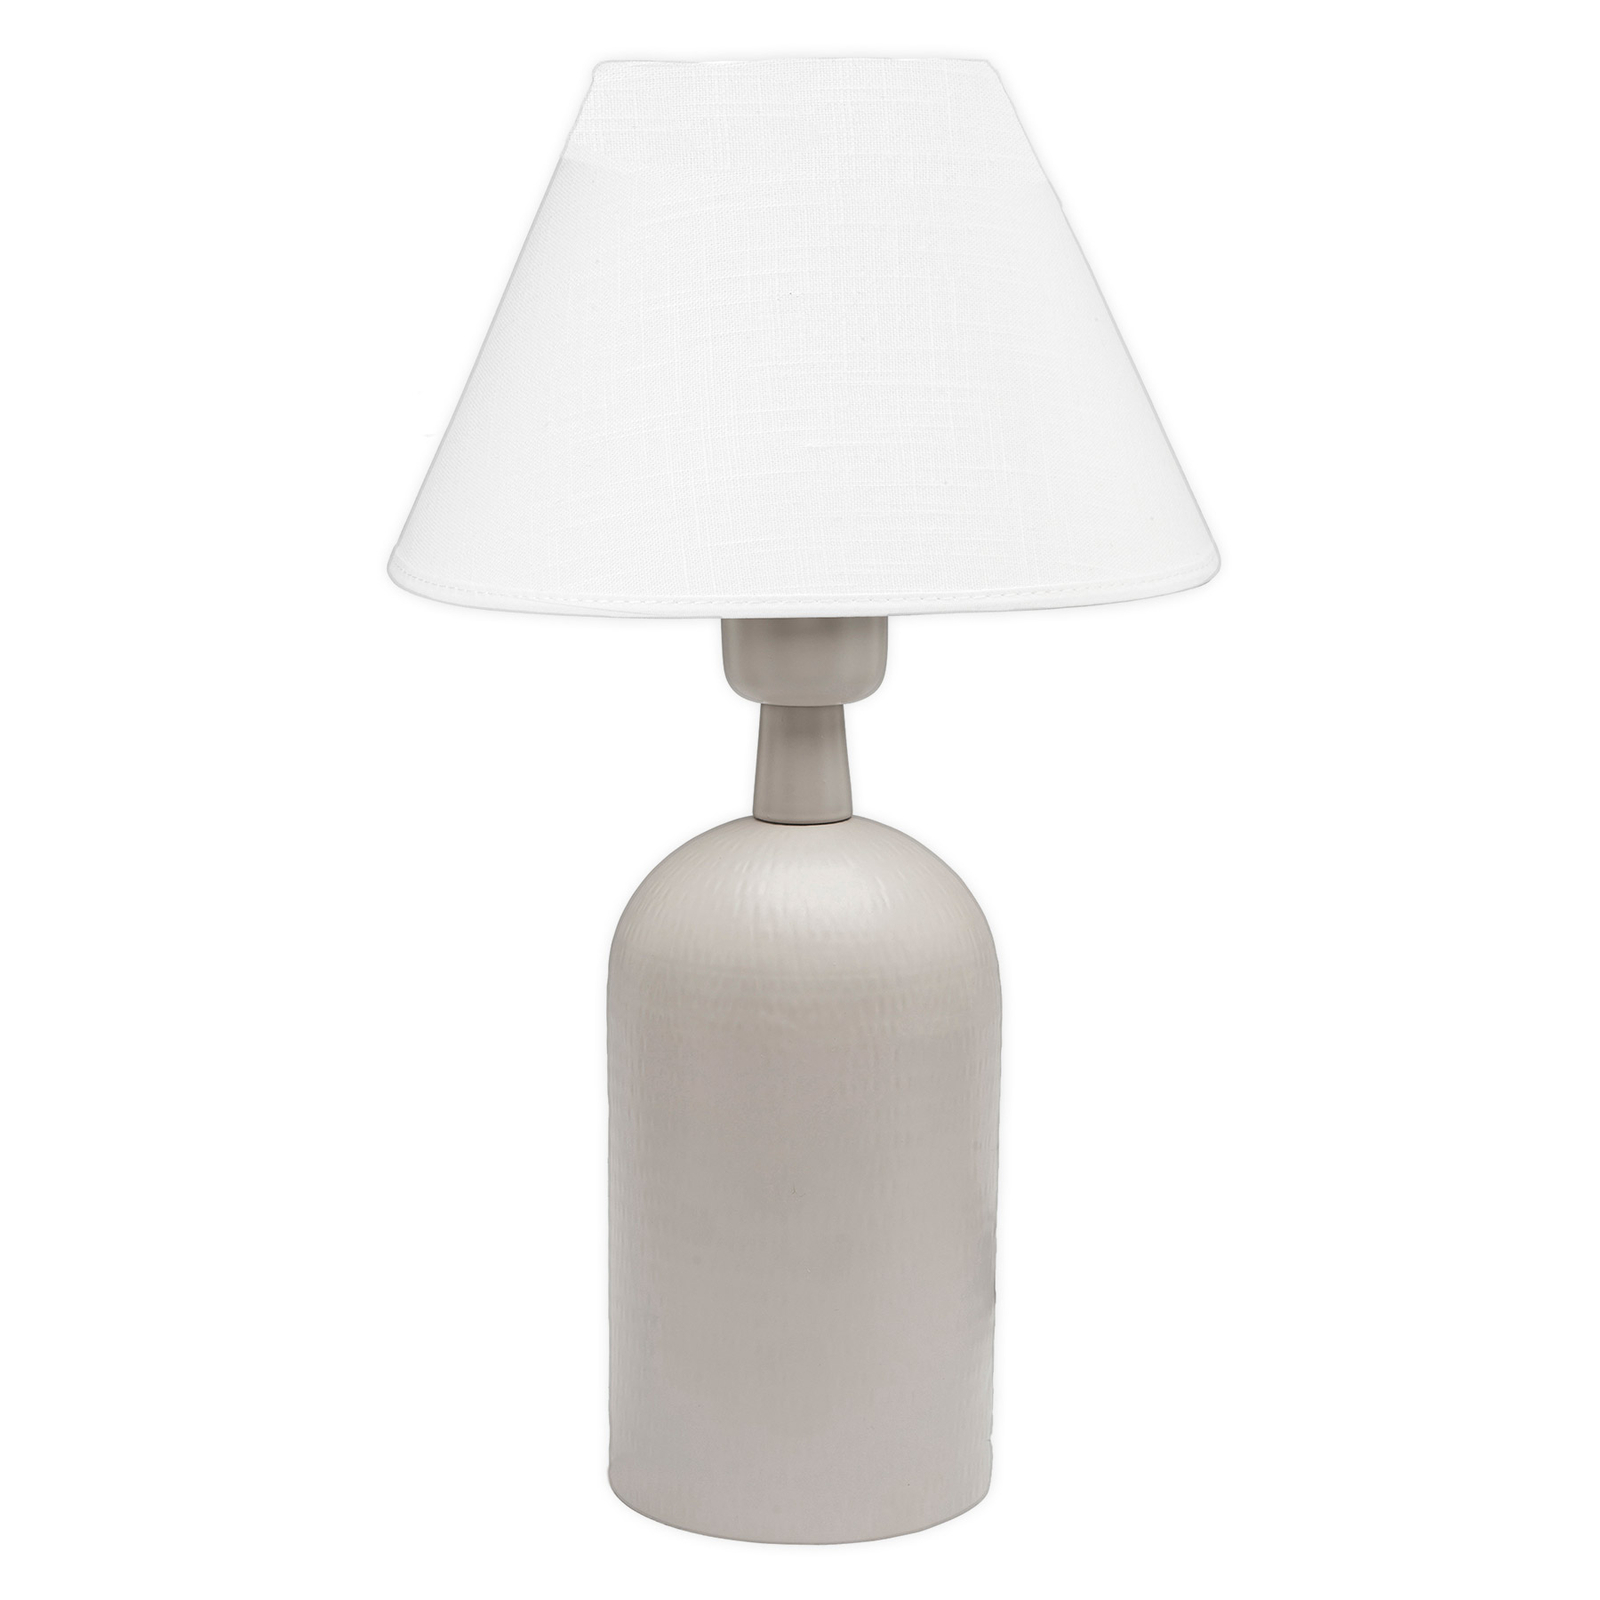 PR Home Riley lampe, abat-jour tissu, beige/blanc